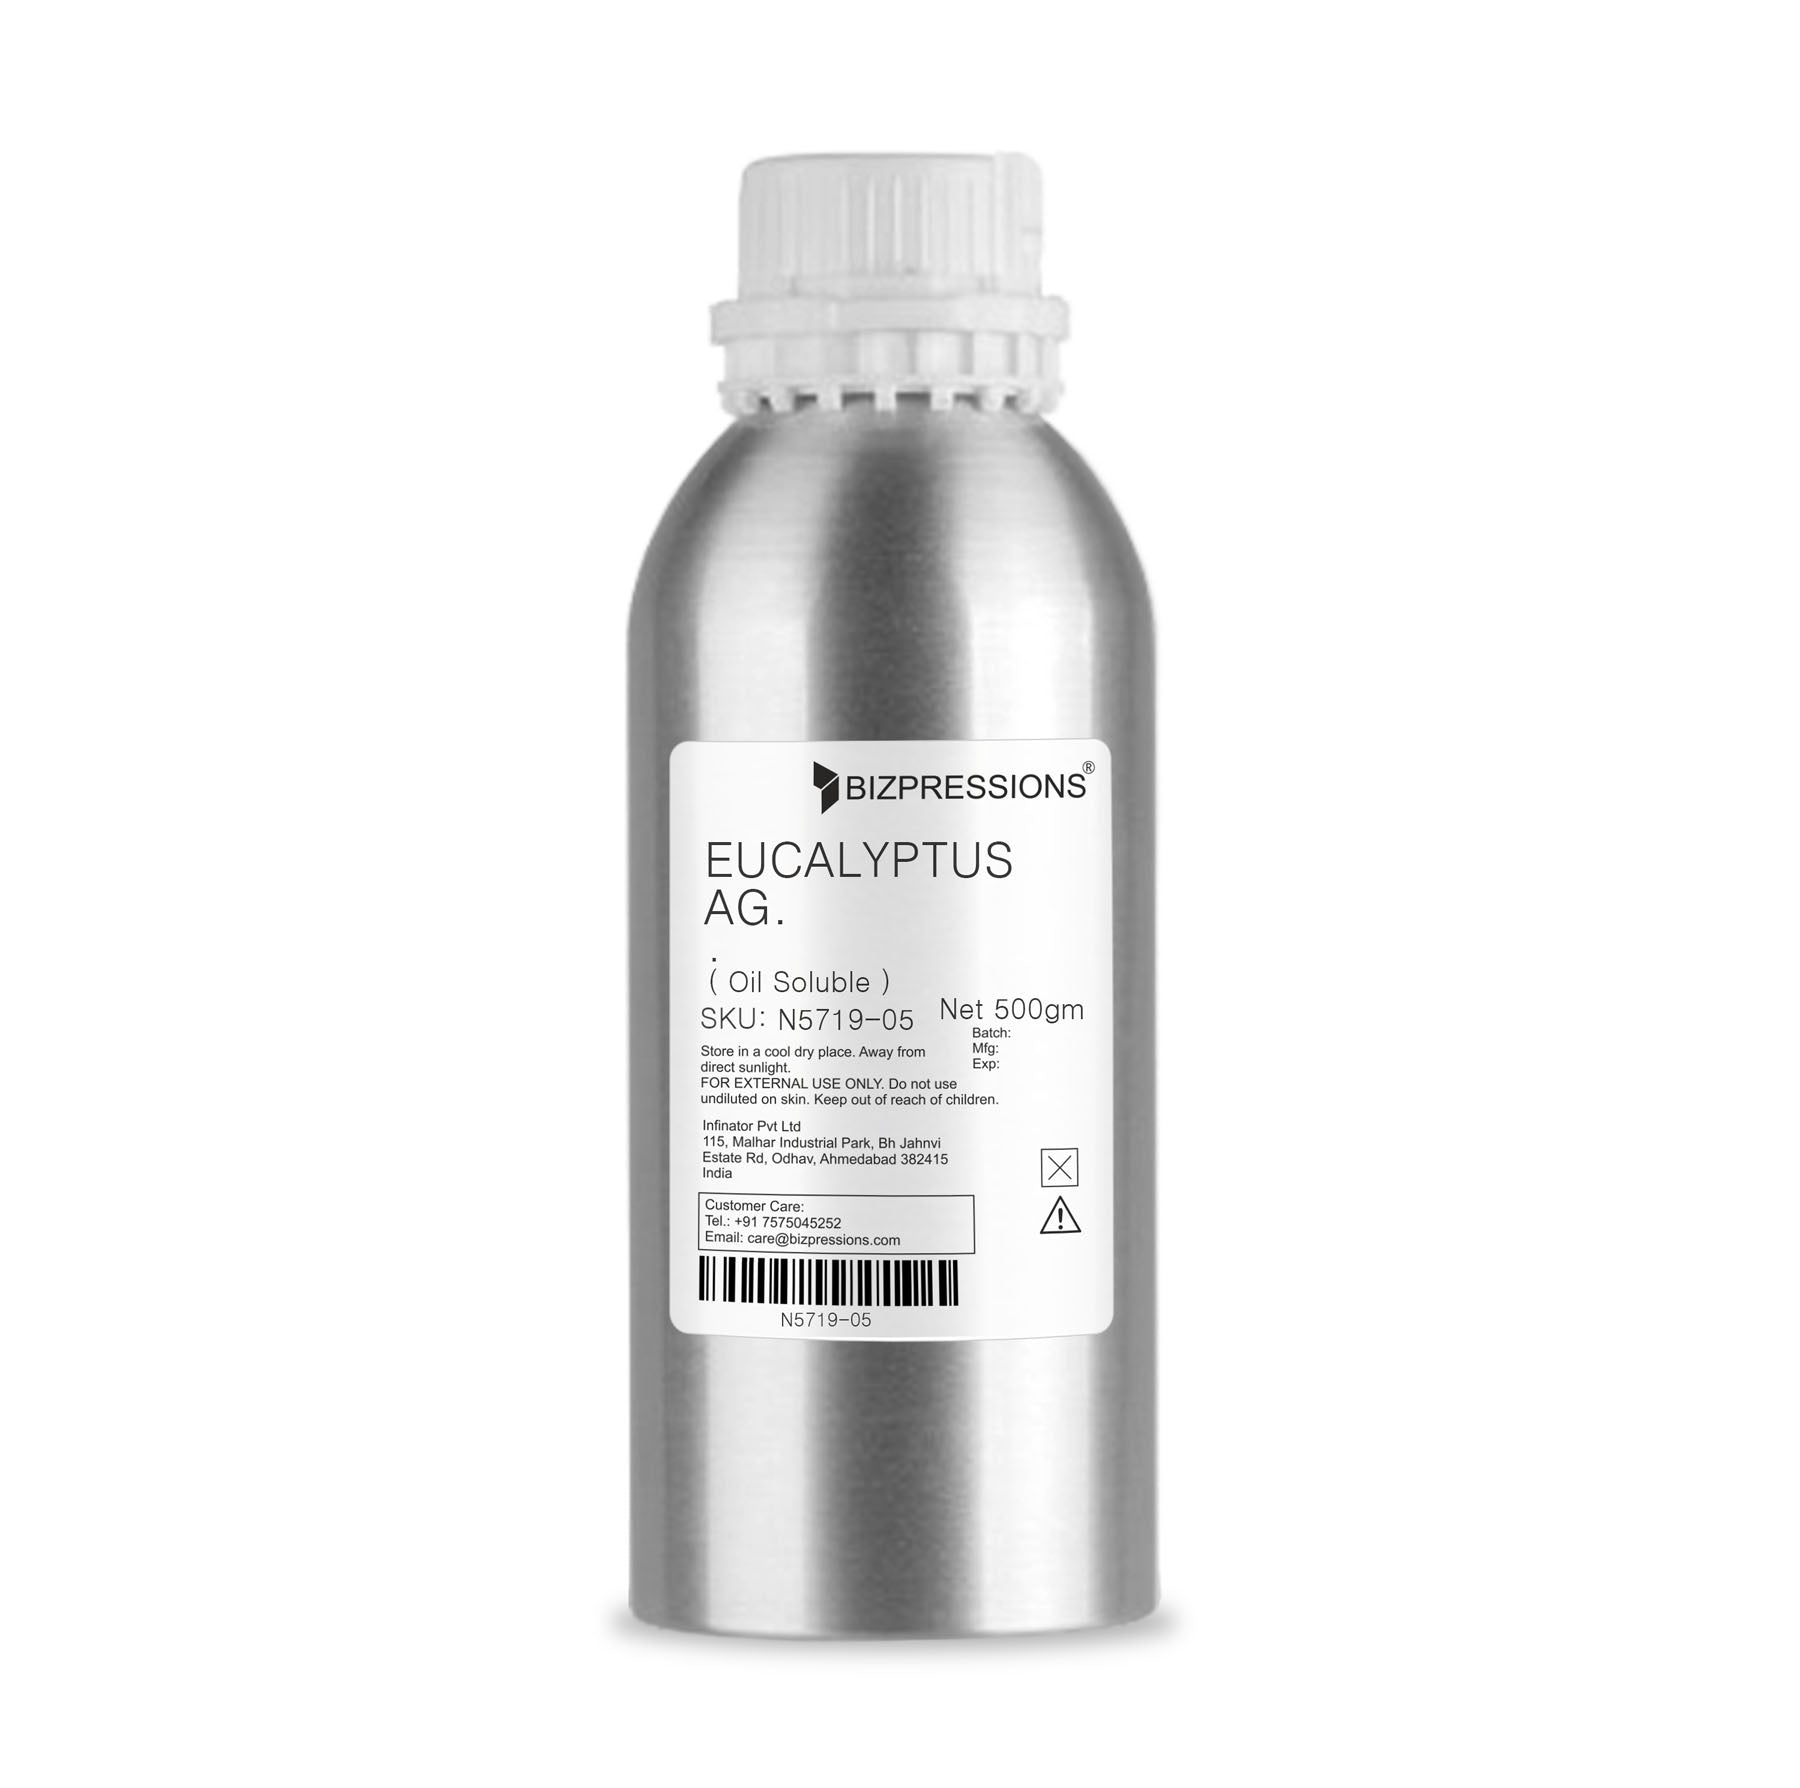 EUCALYPTUS AG. - Fragrance ( Oil Soluble ) - 500 gm